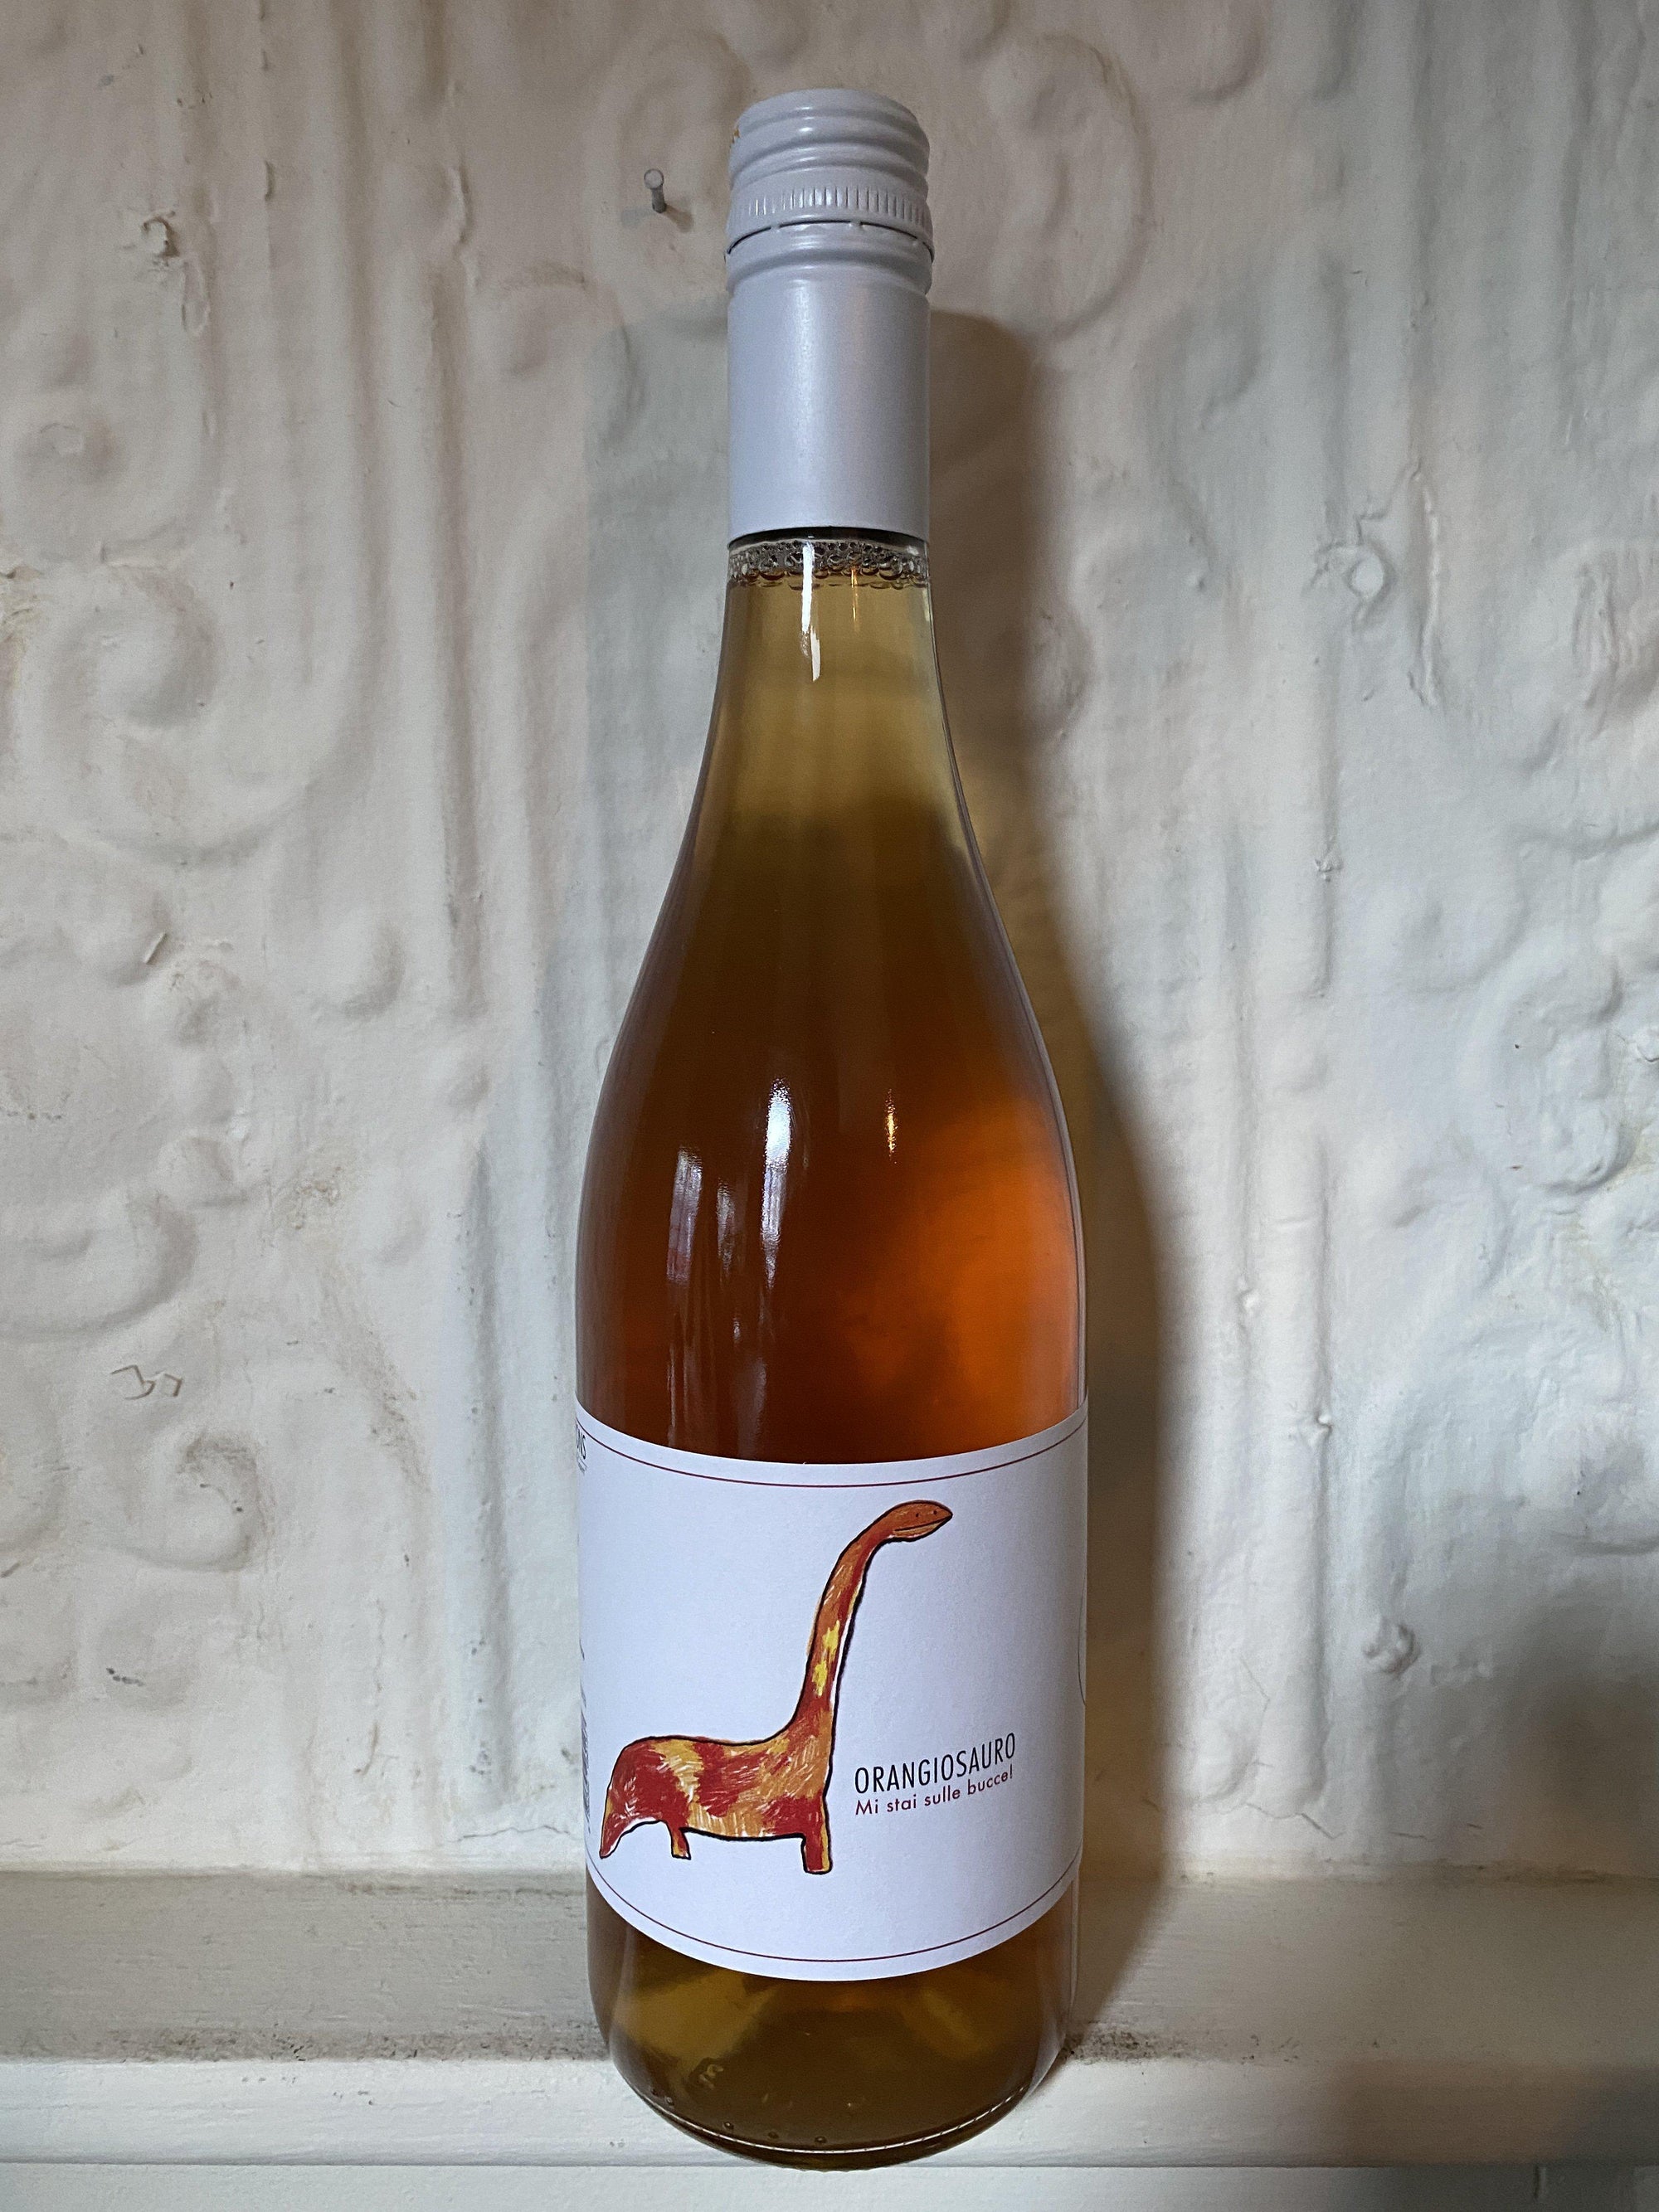 Stuvenagh Orangiosauro, Castello di Stefanago 2019 (Lombardy, Italy)-Wine-Bibber & Bell